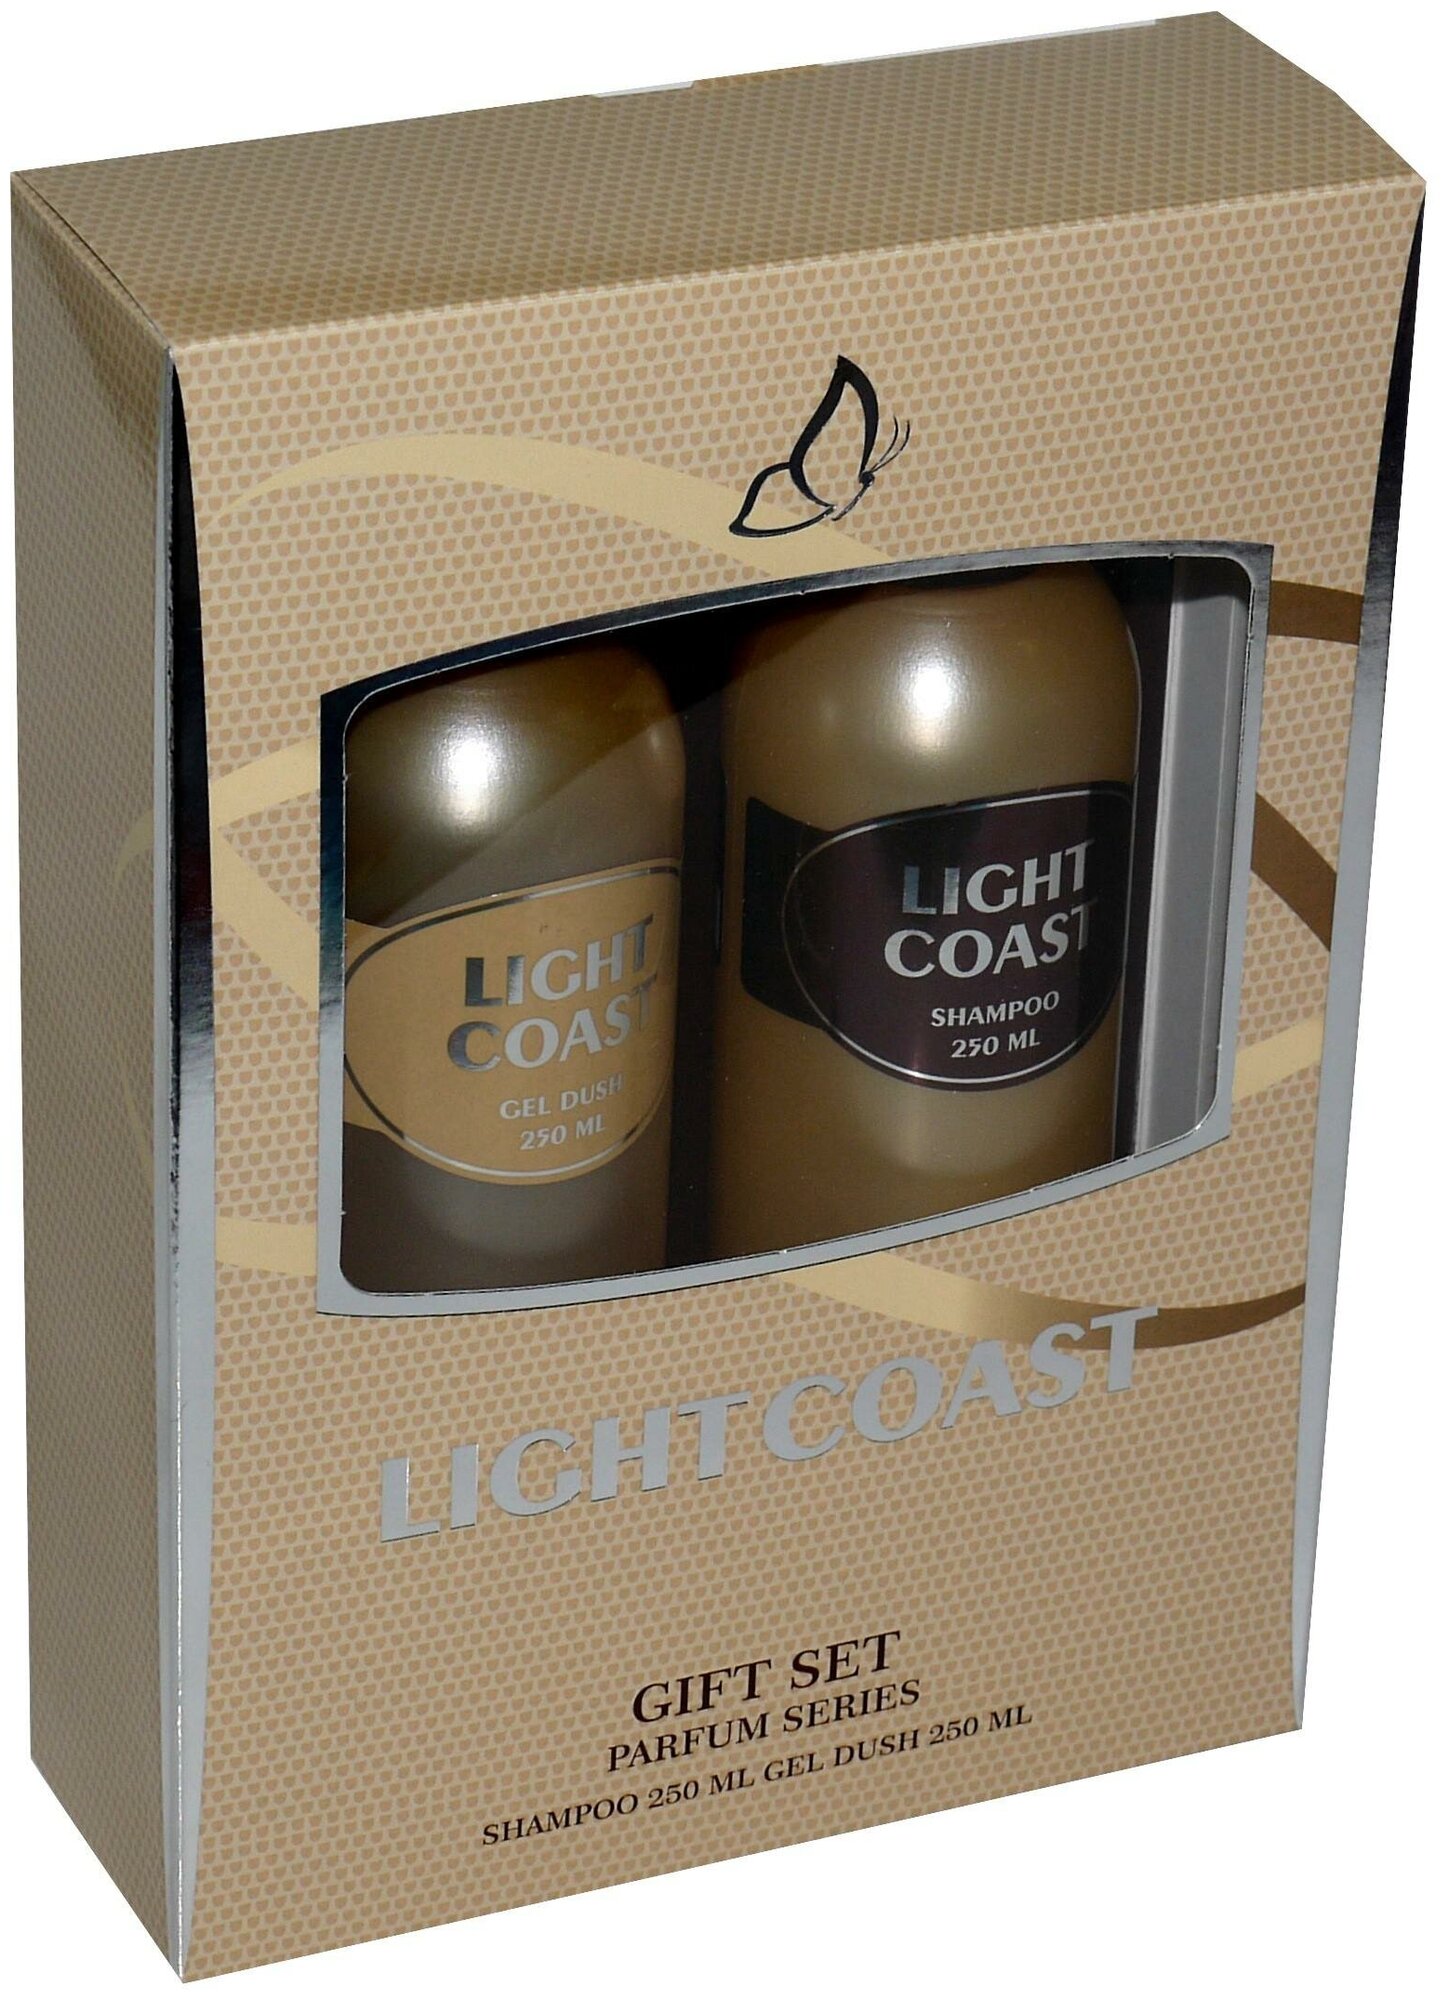 Набор косметический парфюмерный для женщин Light Coast (шампунь 250 мл + гель для душа 250 мл)